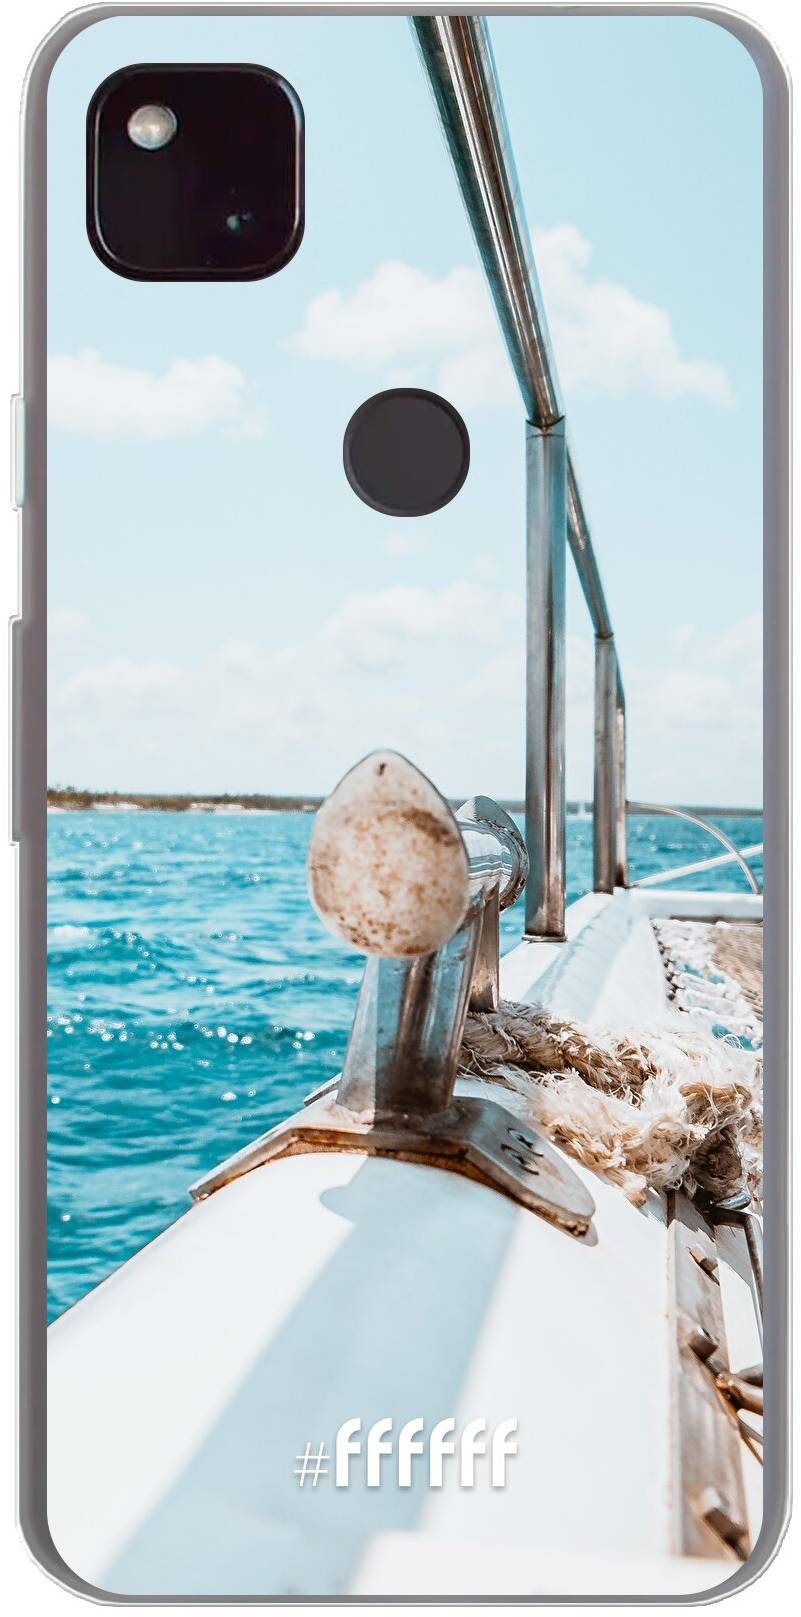 Sailing Pixel 4a 5G